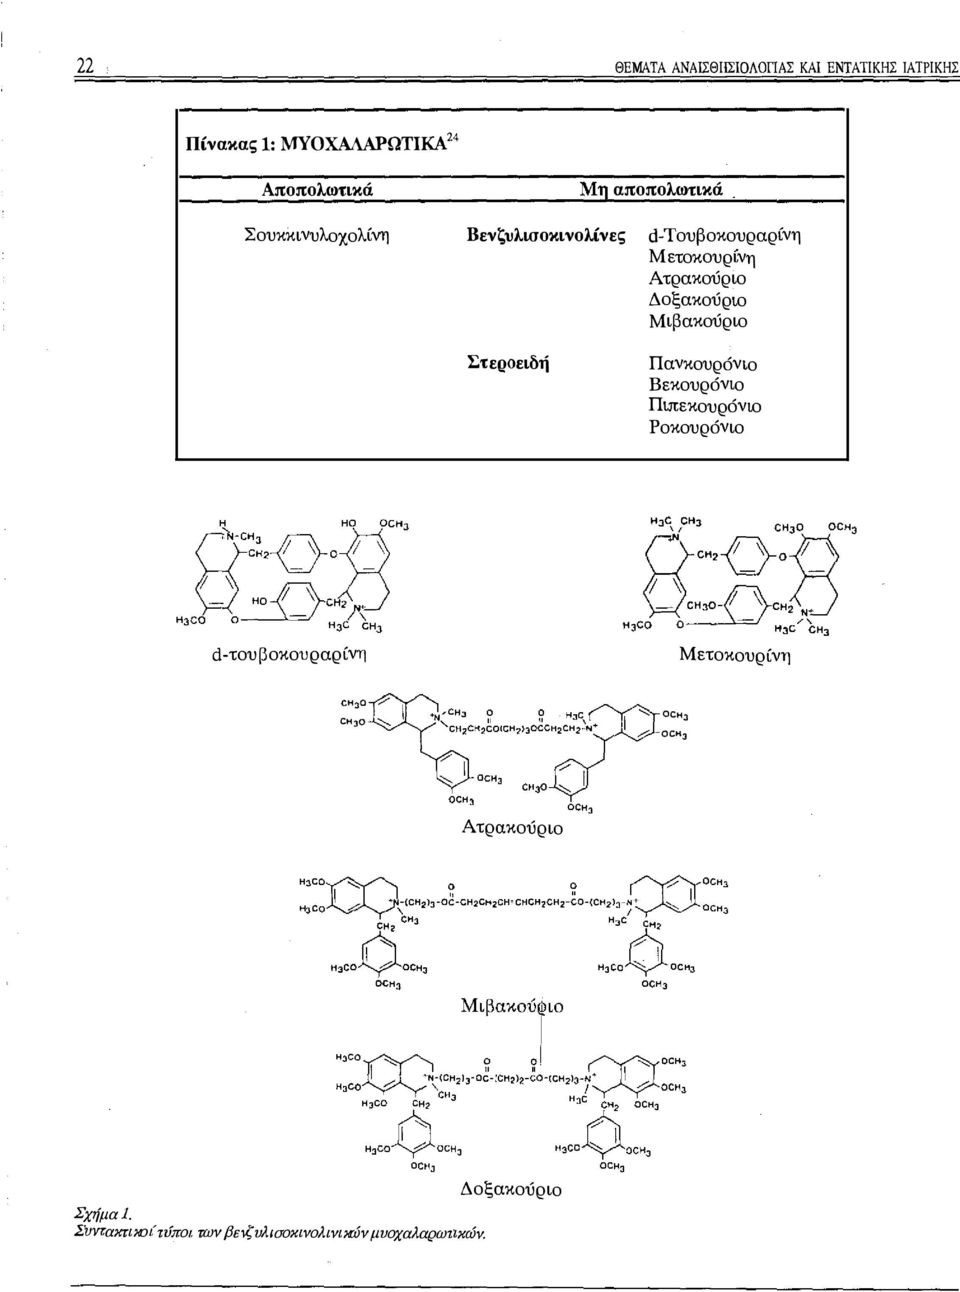 Πανκουρόνιο Βεκουρόνιο Πιπεκουρόνιο Ροκουρόνιο d-τουβοκουραρίνη Μετοκουρίνη CH:30 7 CH30 -"-/'-.-. / -.